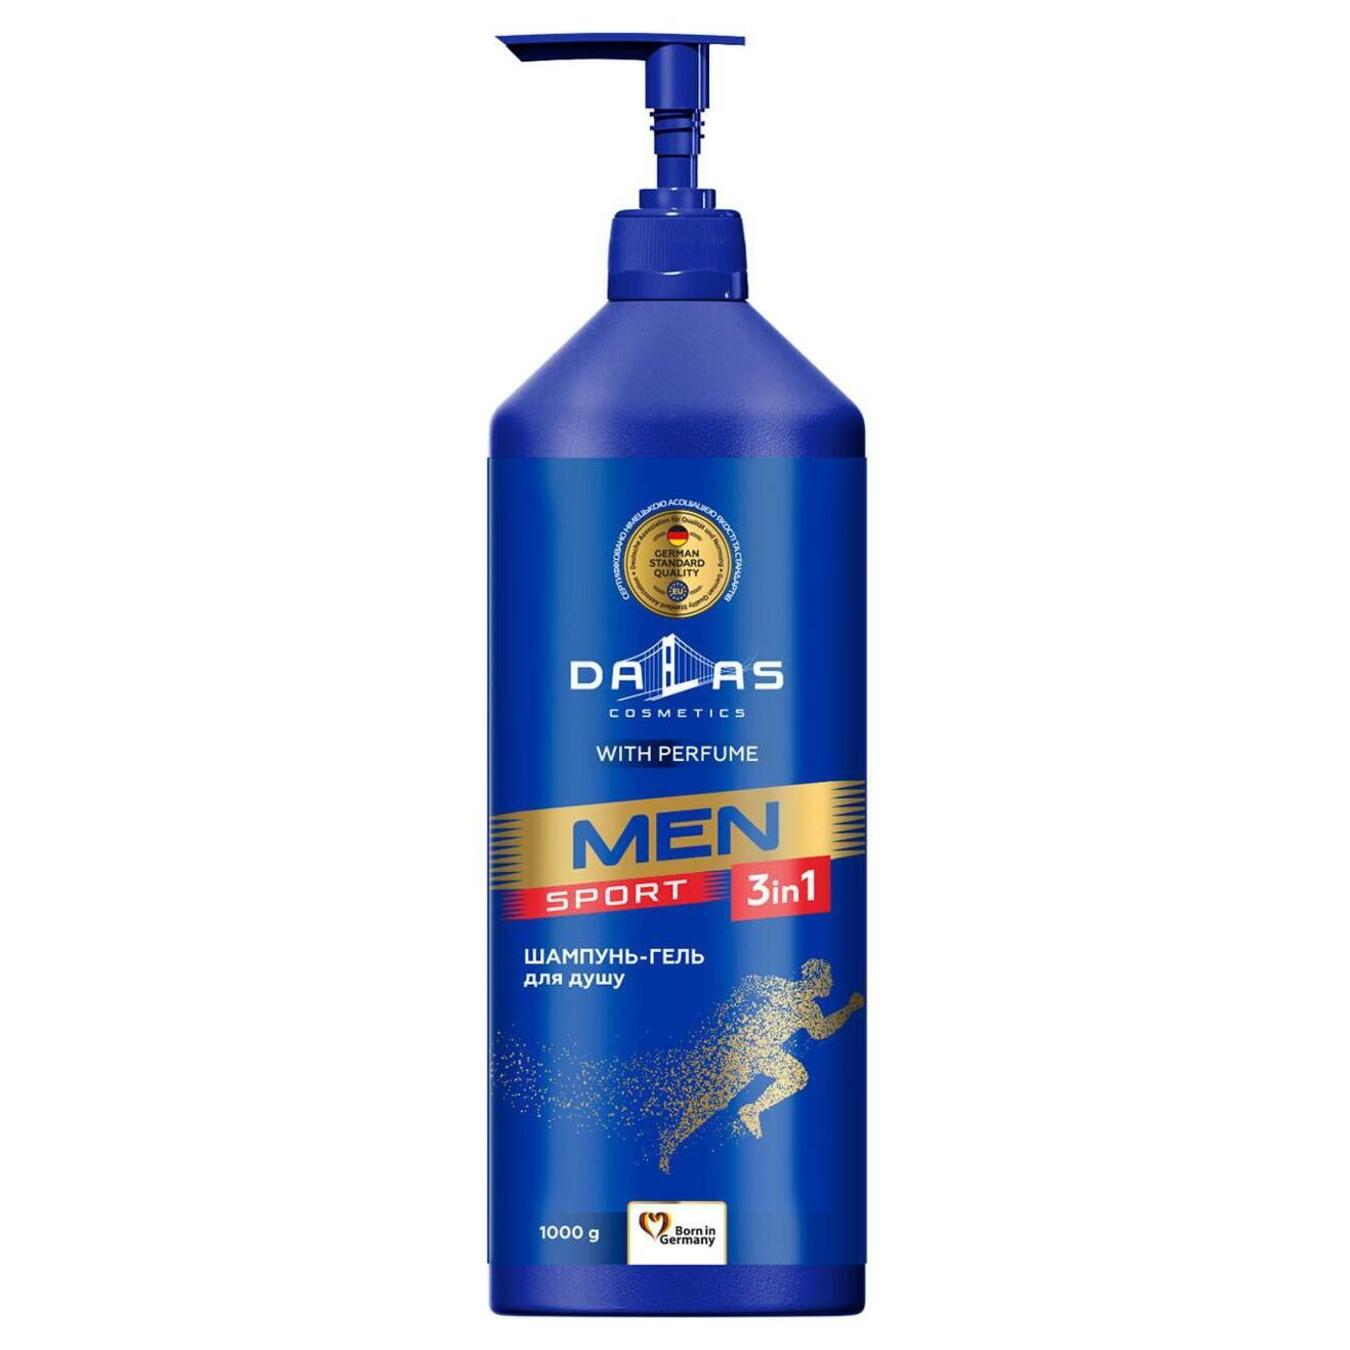 Men's shower gel shampoo 3 in 1 sport Dalas 1000g